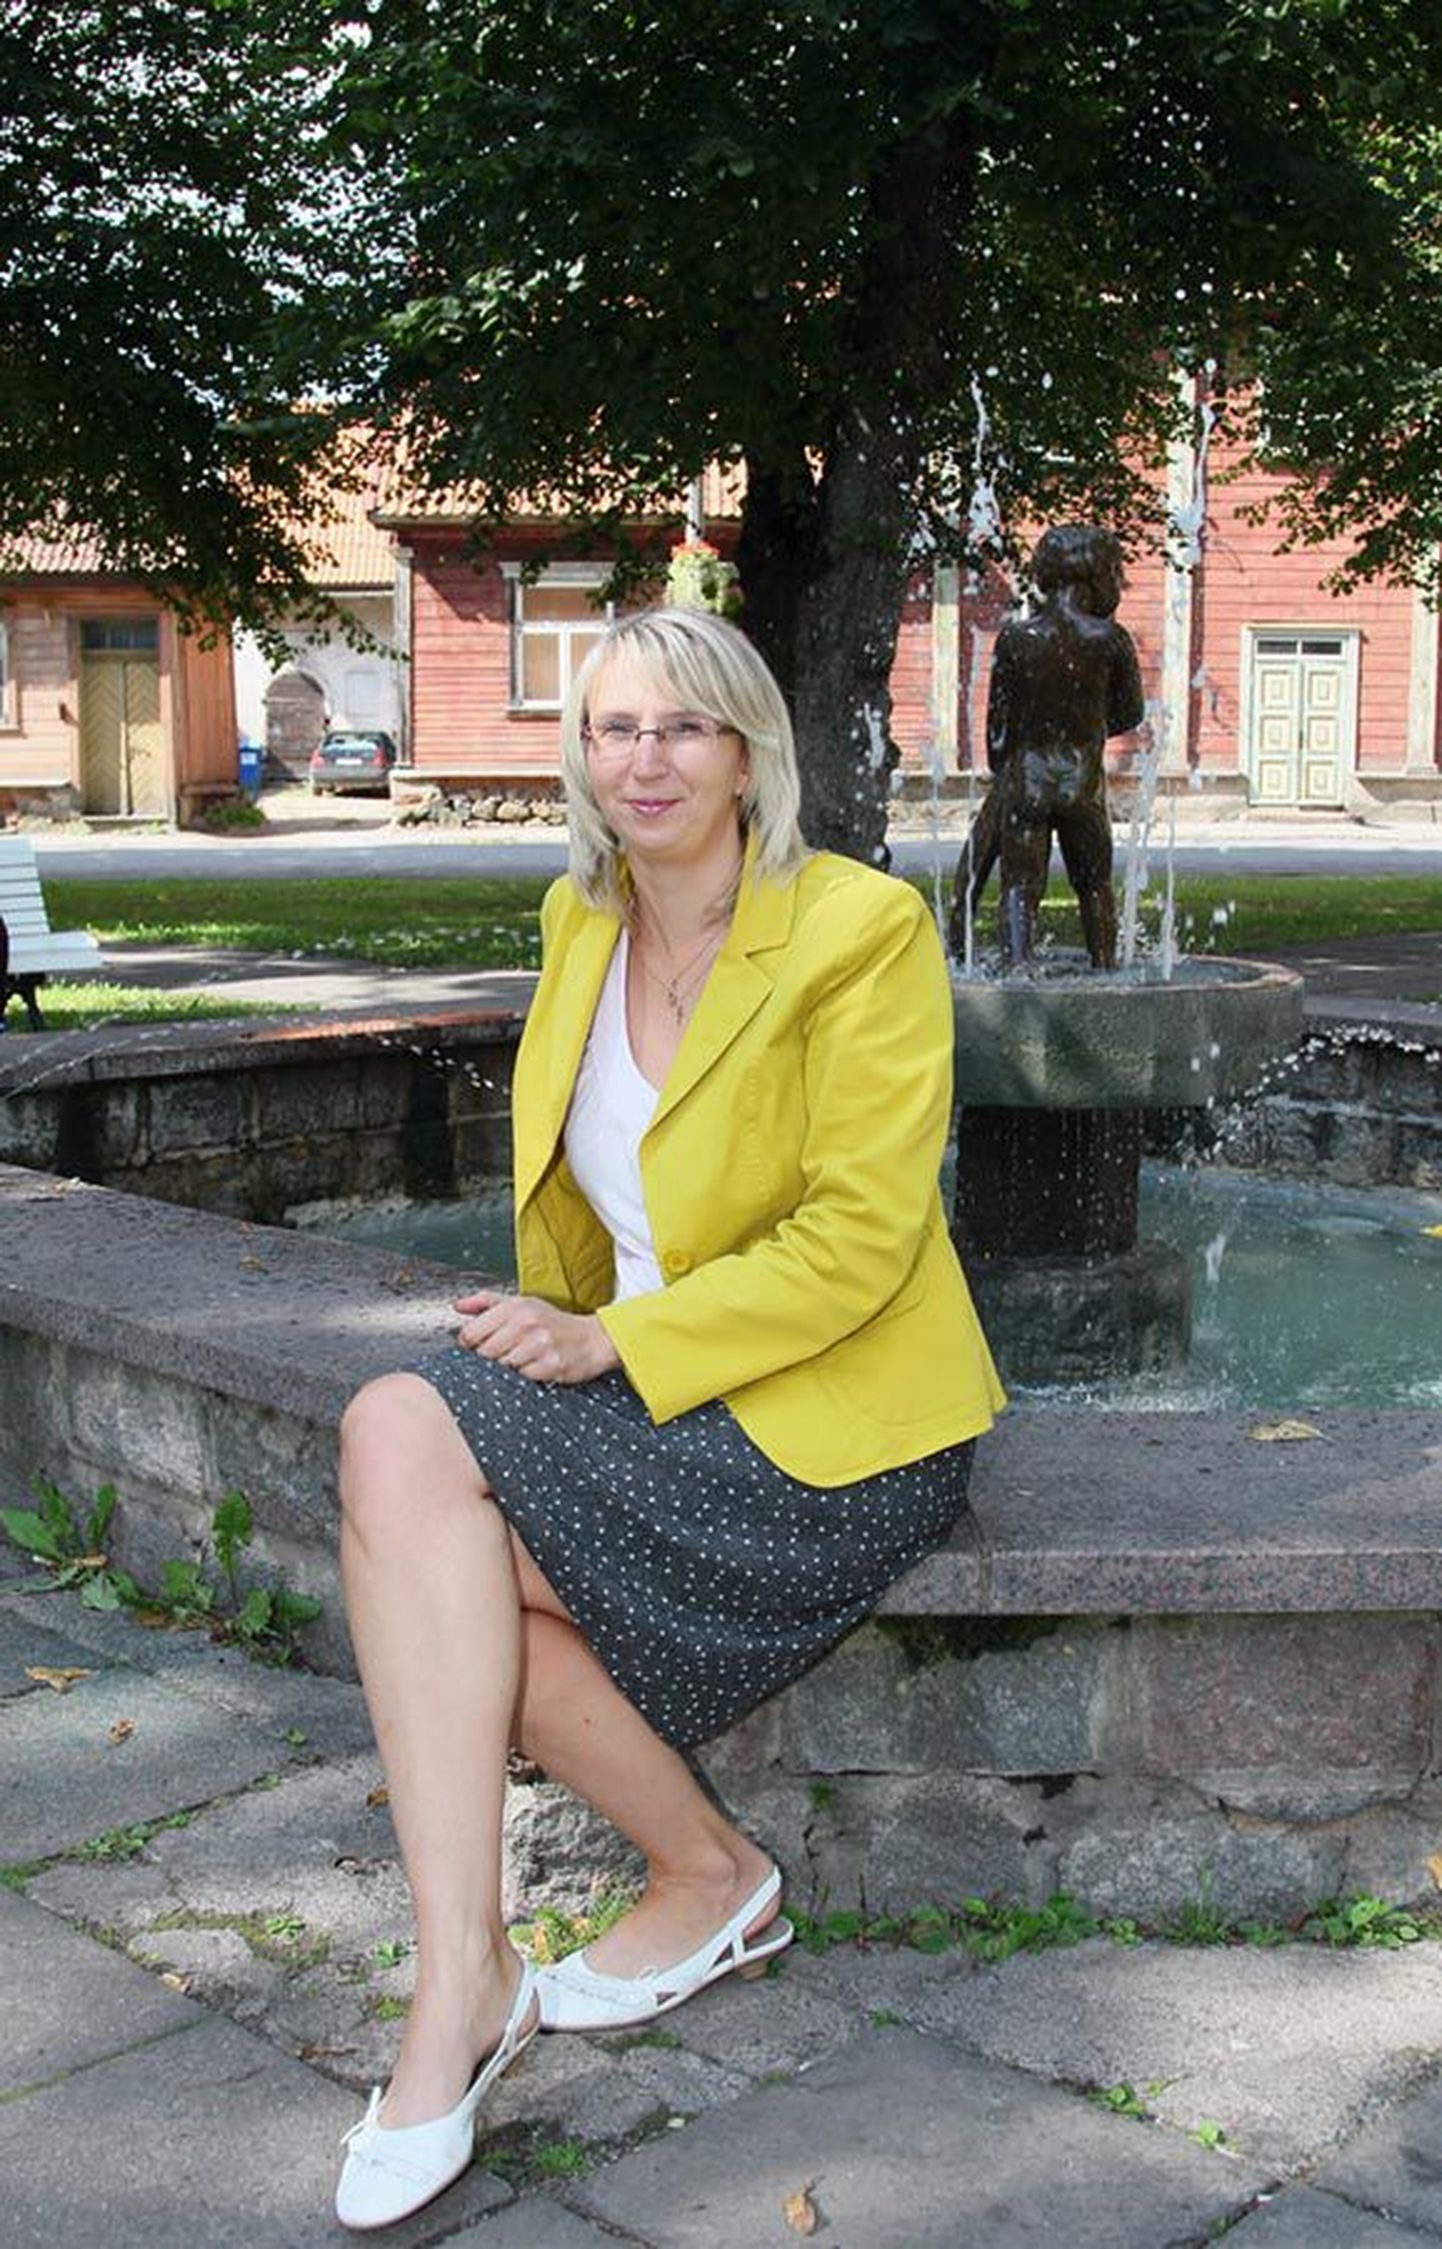 Viljandi sotsiaalameti uus juhataja Livia Kask väldib nüristumist pidevalt koolitustel käies.